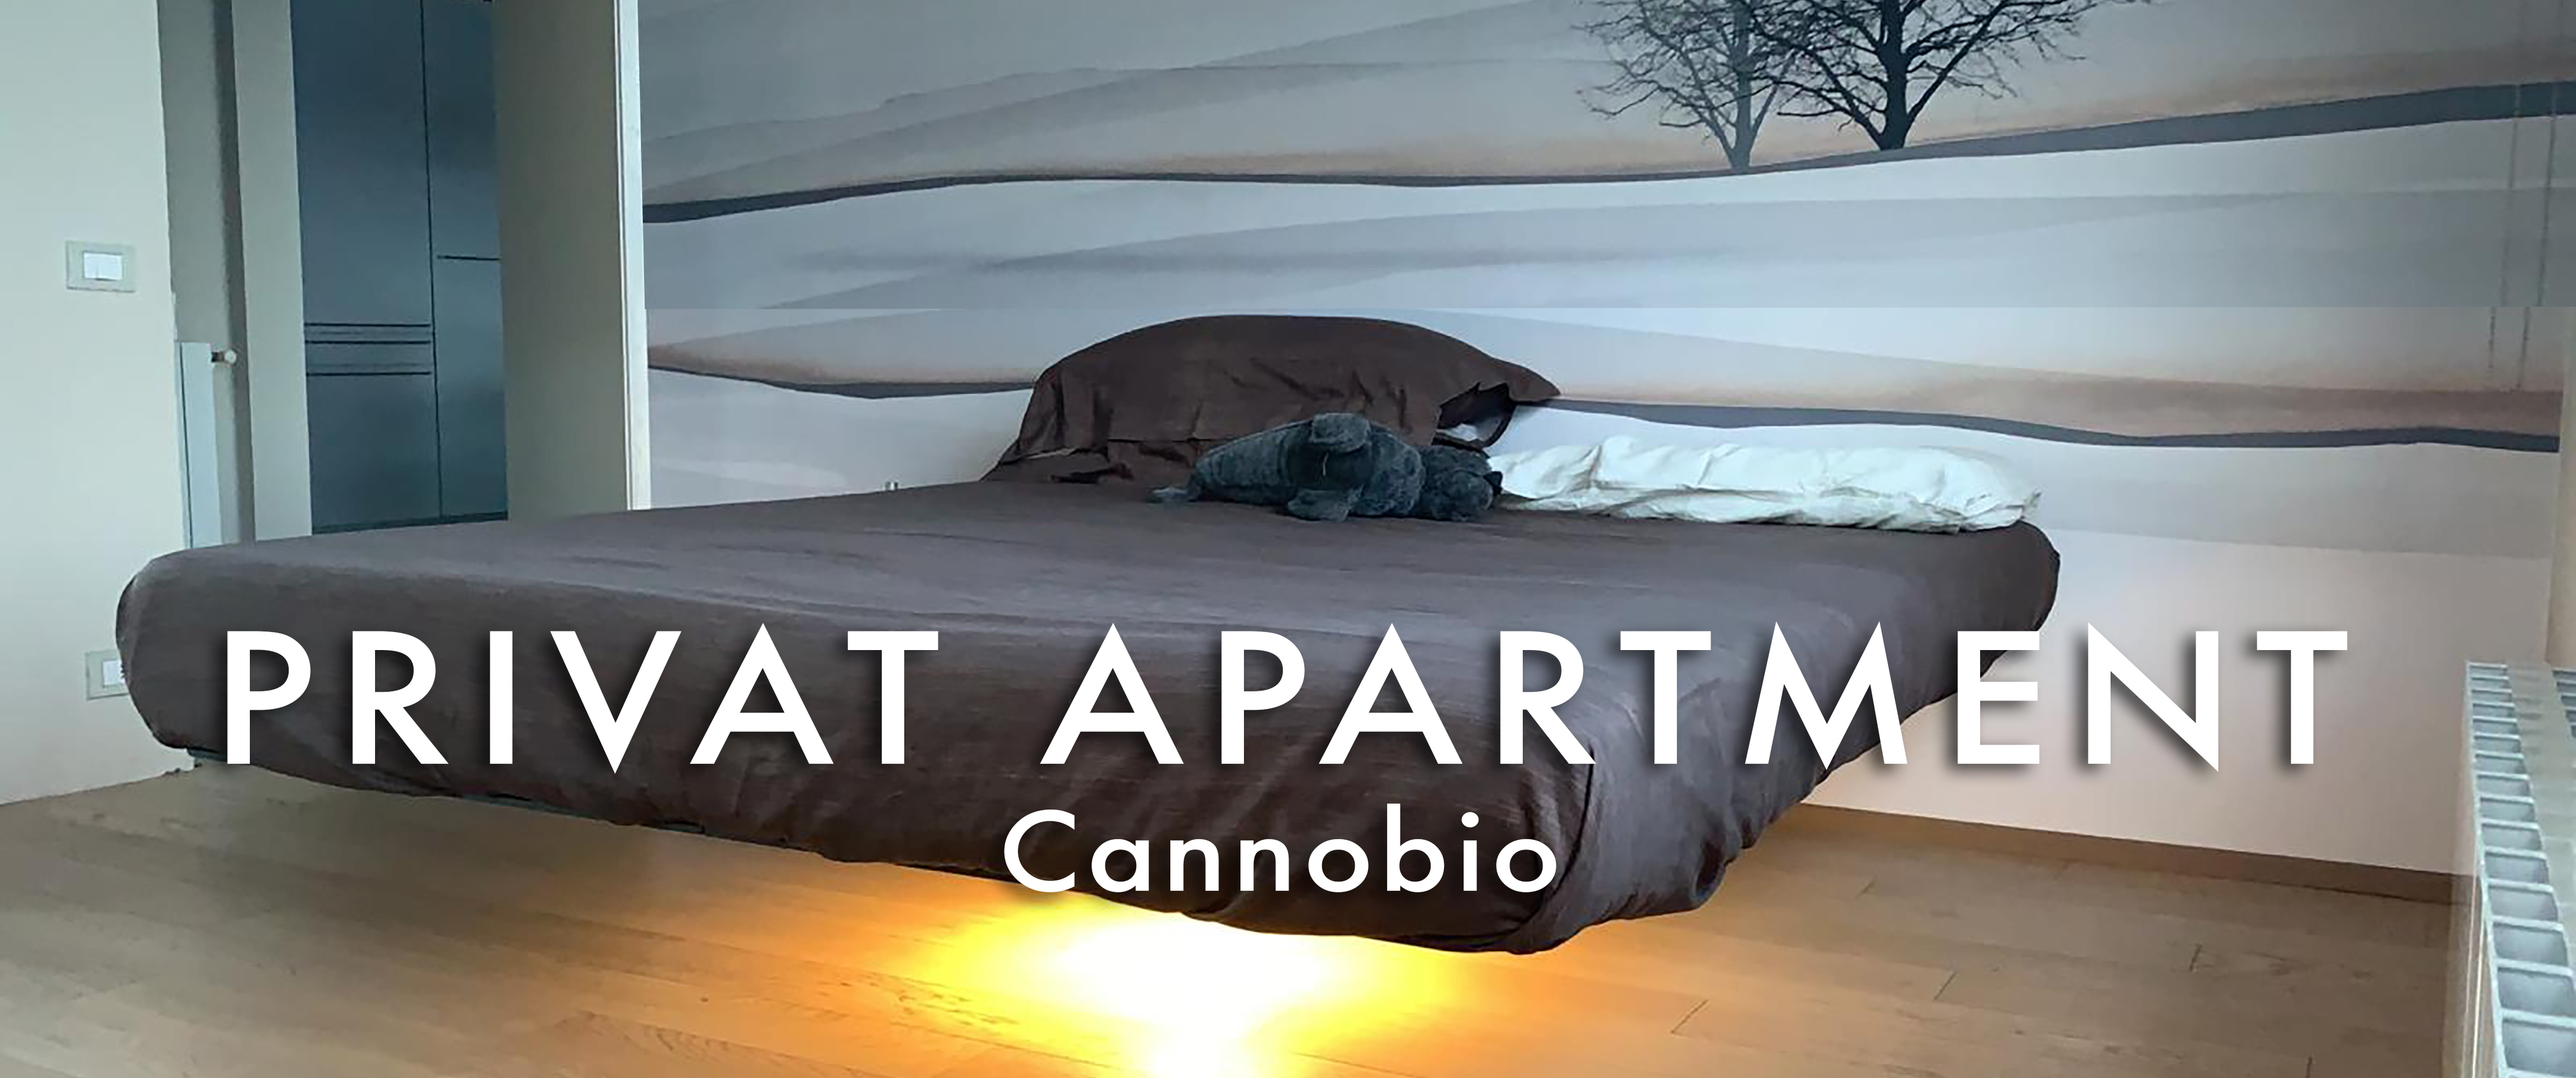   Private Apartment   Cannobio -italy